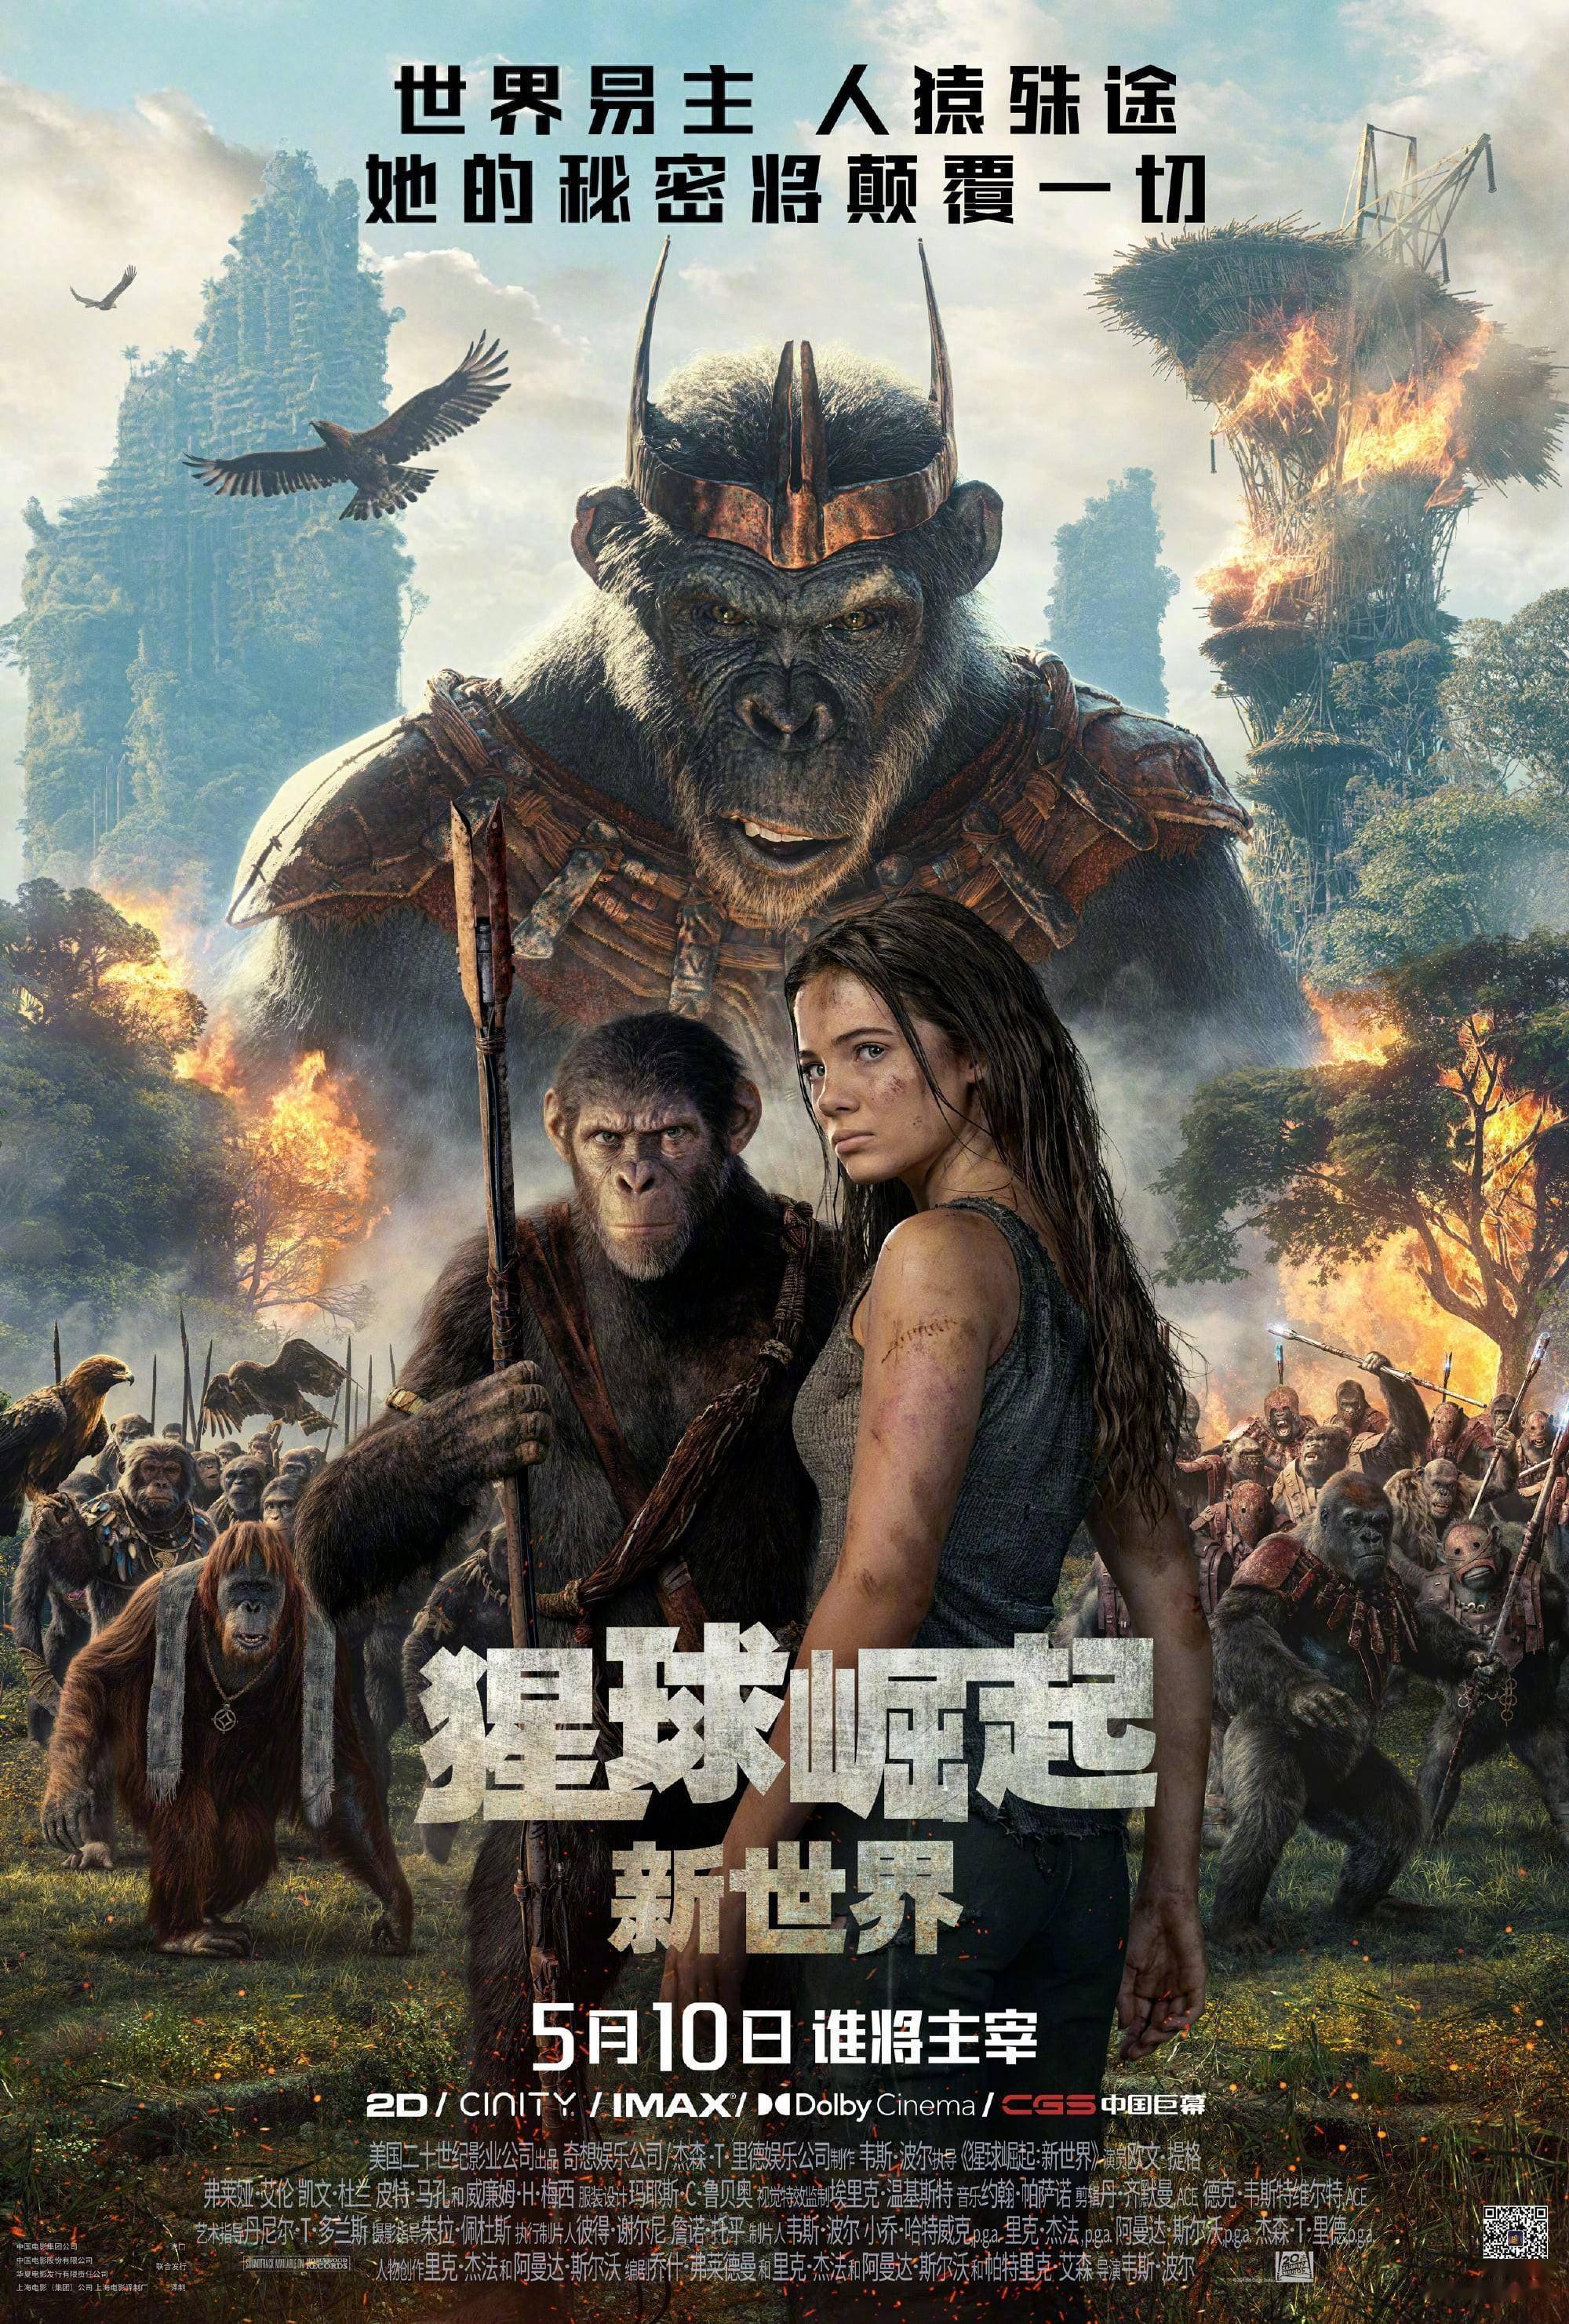 猩球崛起新世界定档海报及预告5月10日上映